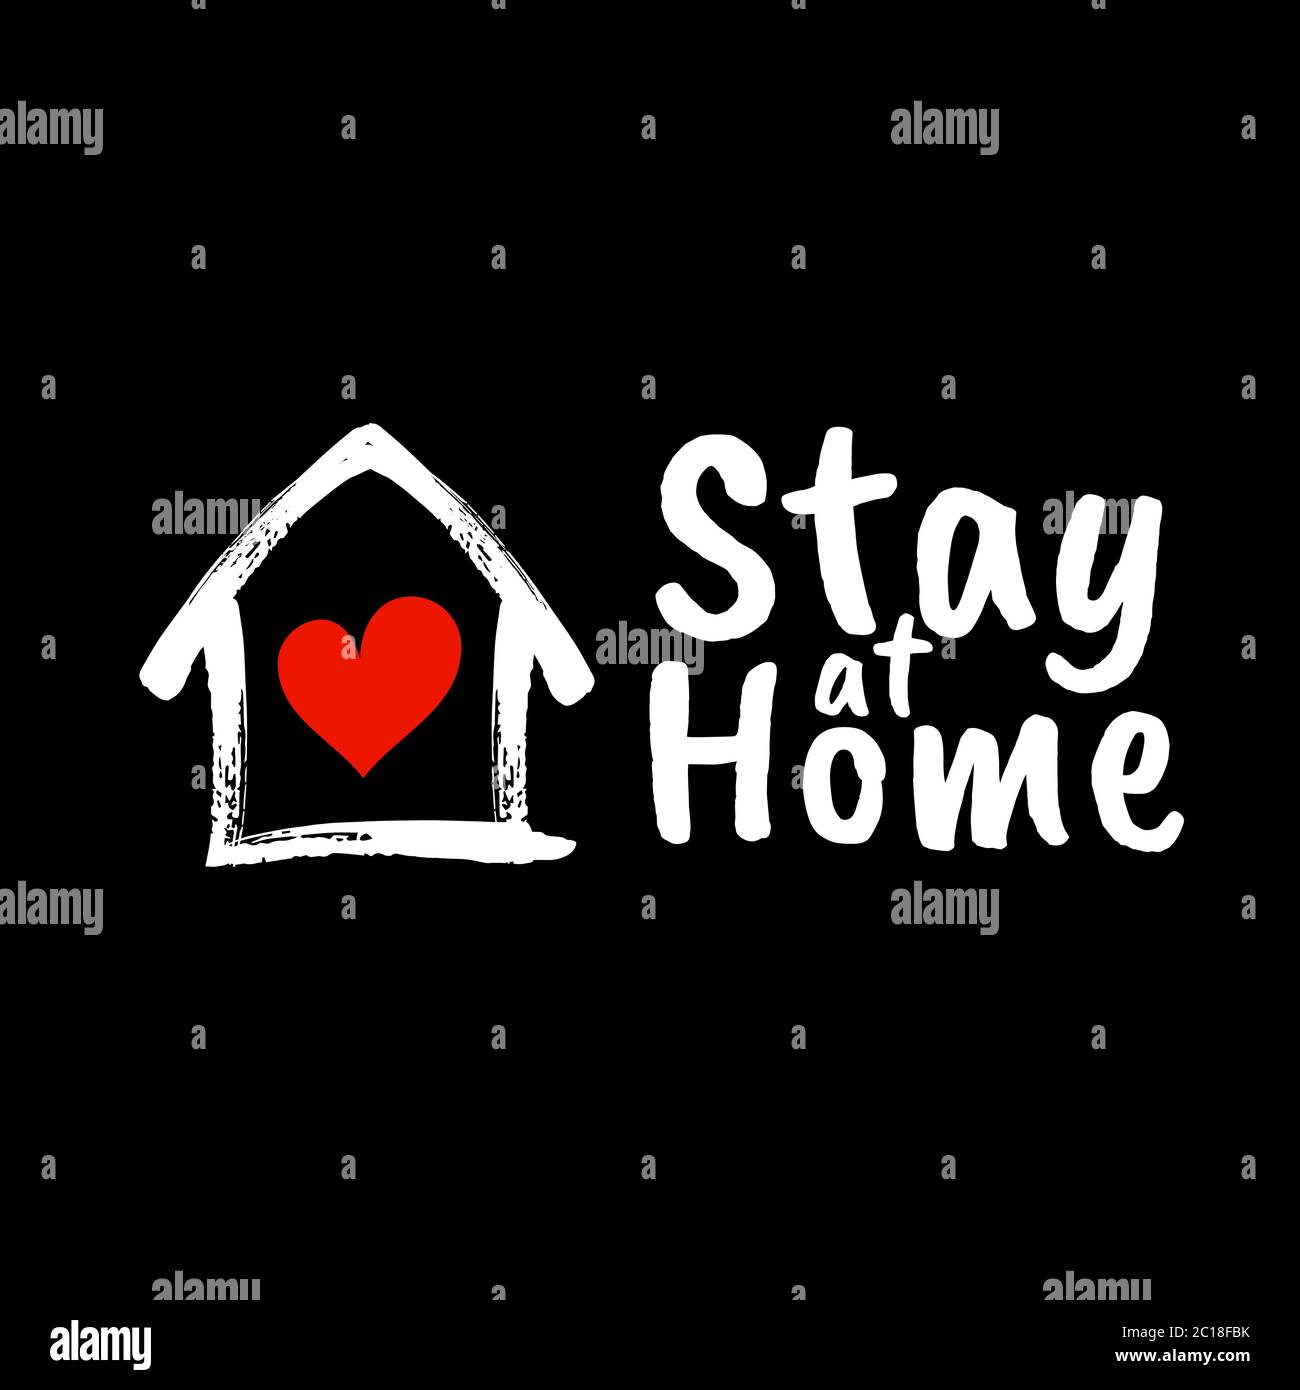 vektordarstellung der Typografie von 'Stay at Home' mit einer Haus- und Herz-Ikone. Geeignet für die Selbstquarantäne-Kampagne und die Verhinderung von COVID-19 Stock Vektor